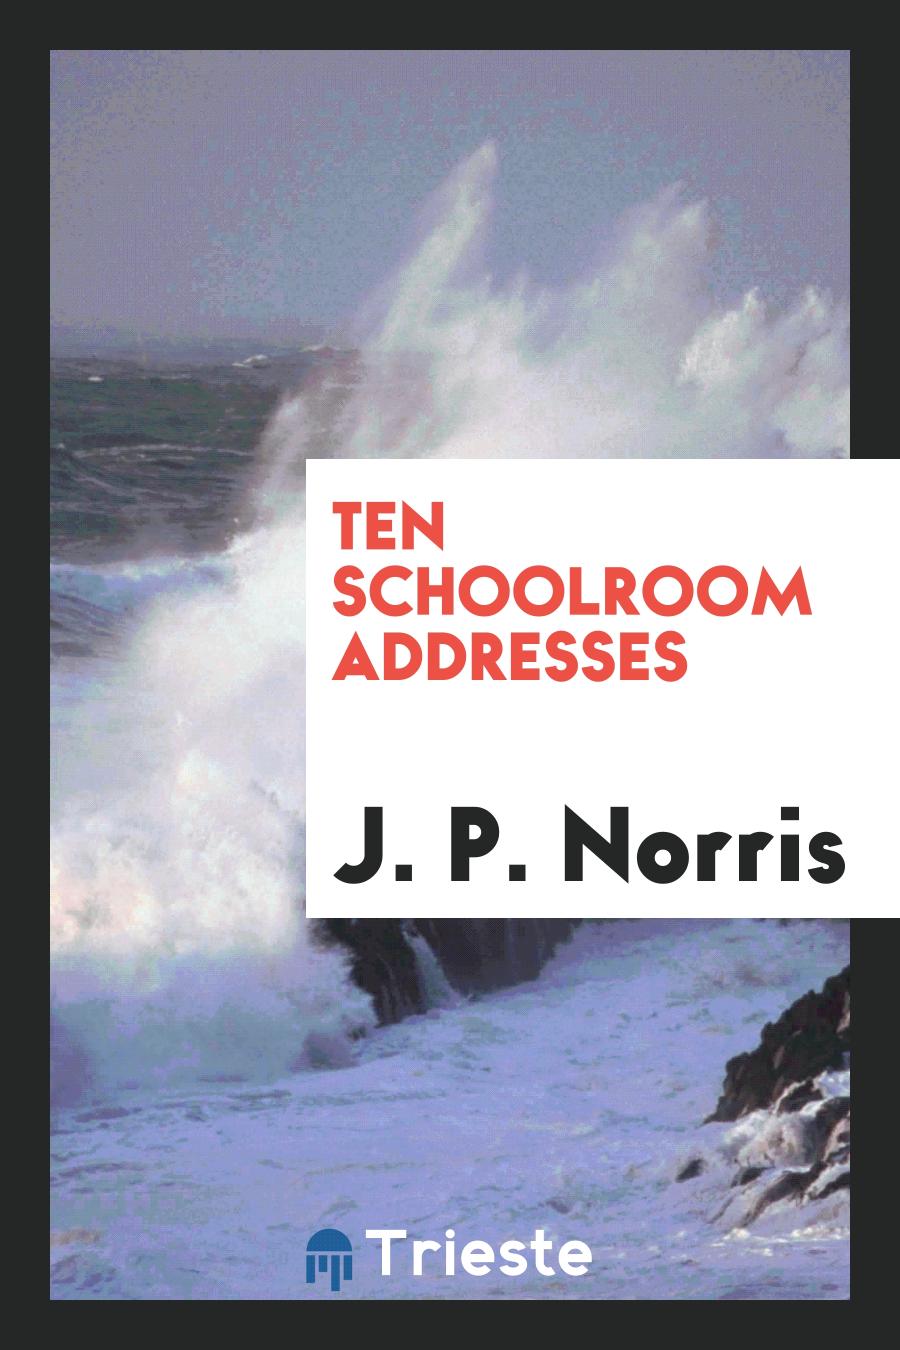 Ten schoolroom addresses